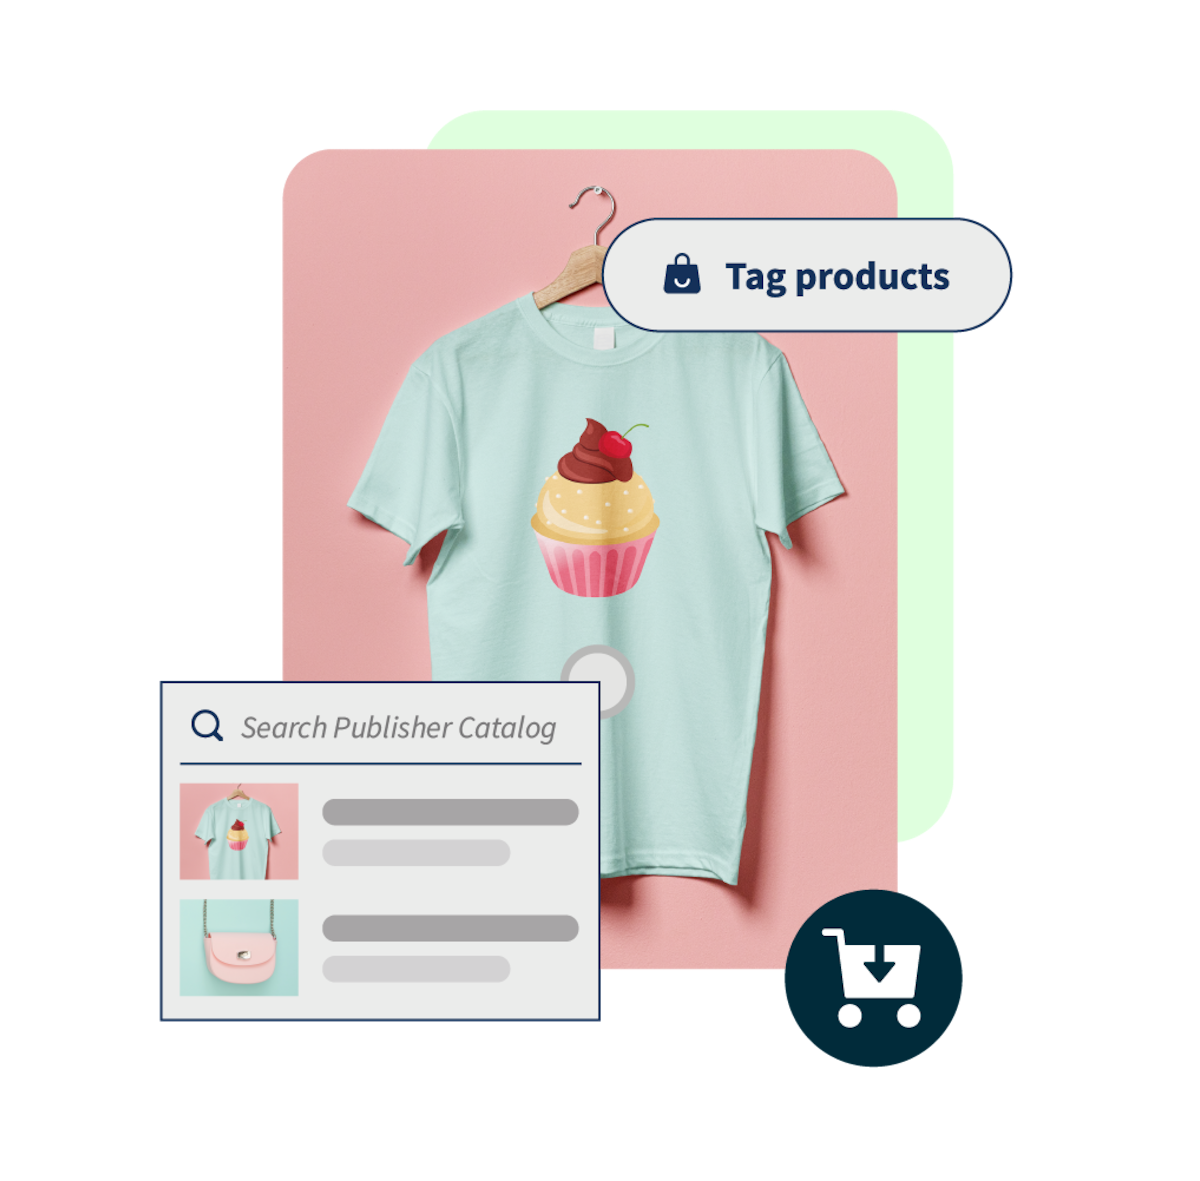 Camiseta com uma imagem de um cupcake e botão que diz &quot;marcar produtos&quot; ao lado